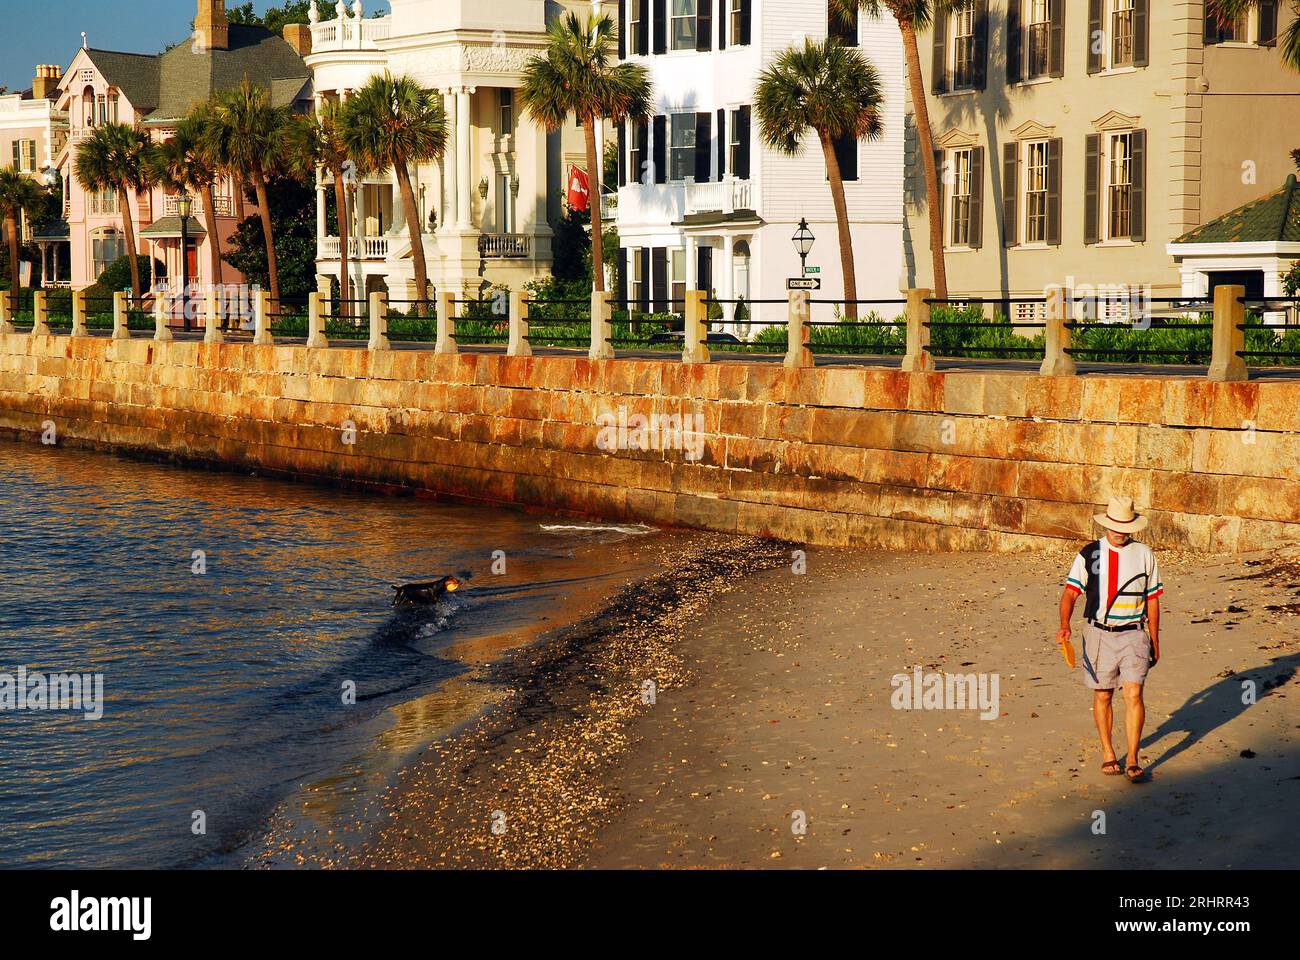 Un homme et son chien profitent de la côte et de la petite plage par une journée ensoleillée près des maisons d'avant-guerre à Charleston, Caroline du Sud Banque D'Images